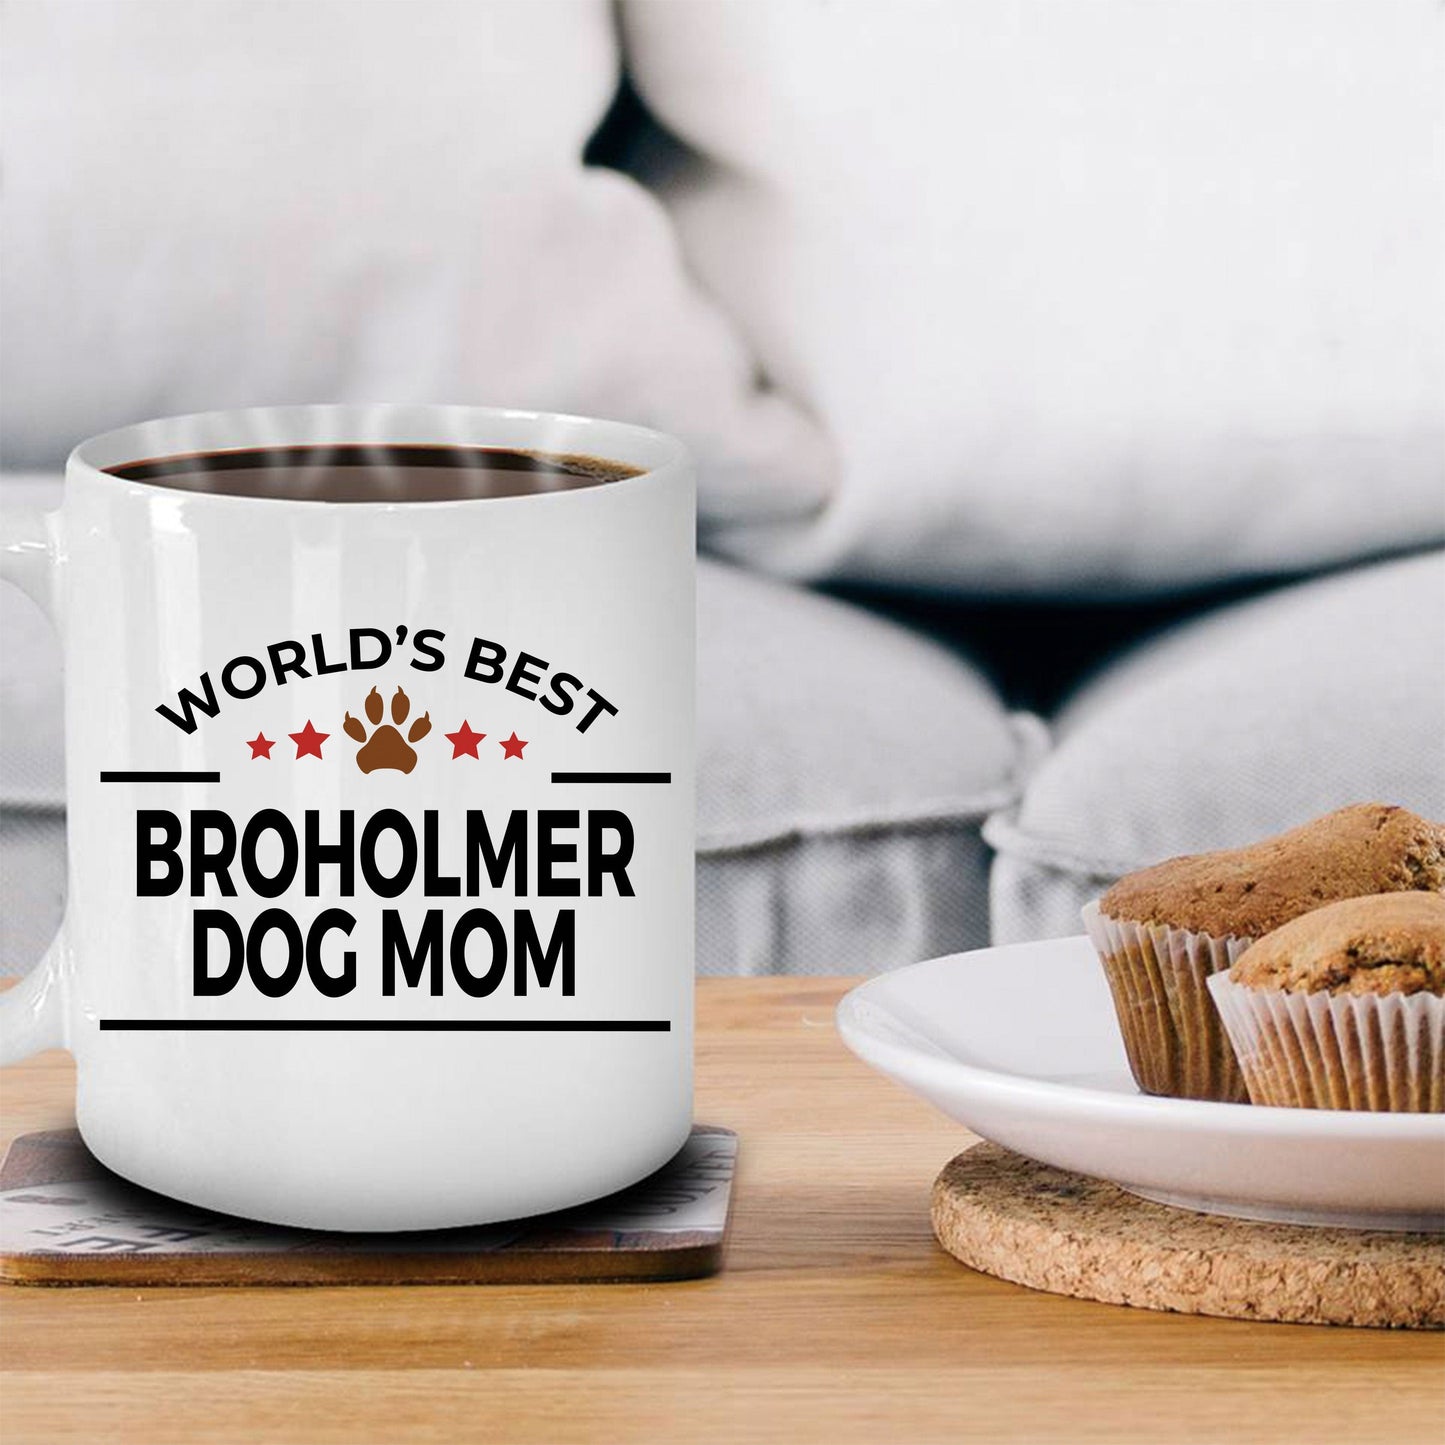 Broholmer Dog Mom Coffee Mug